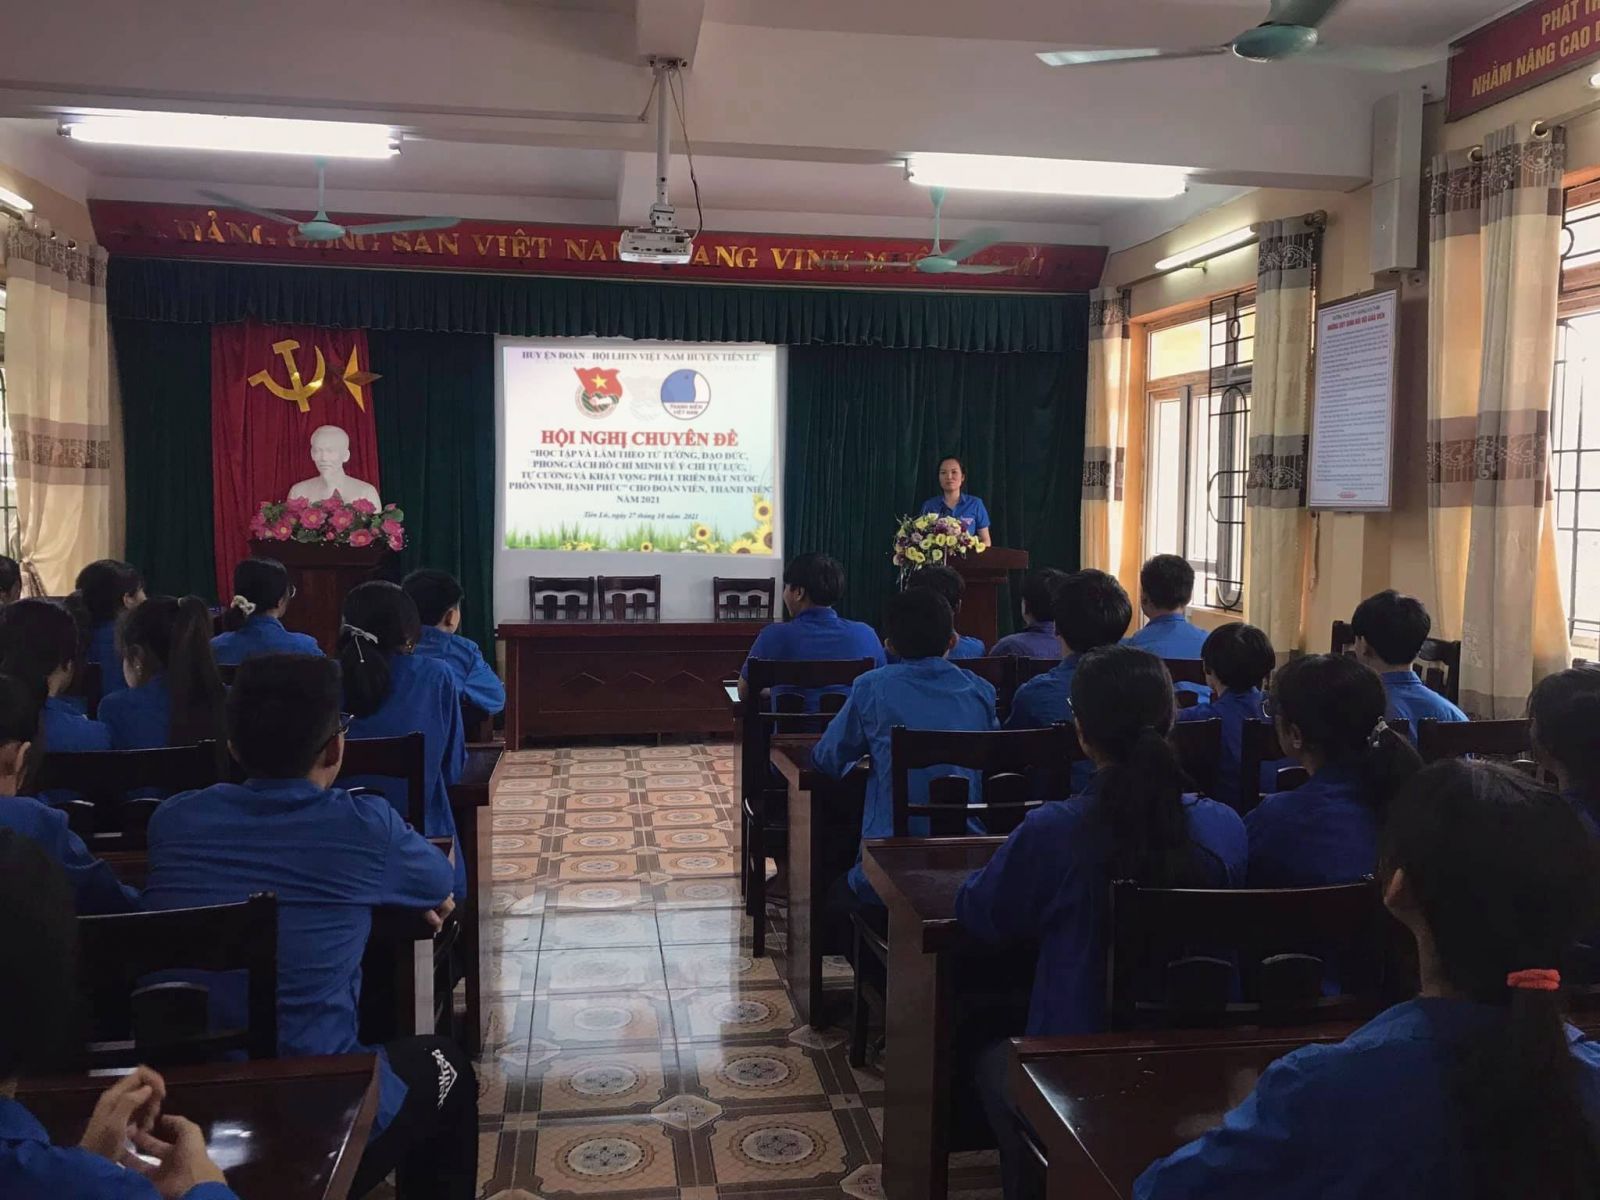 Huyện đoàn Tiên Lữ tổ chức Hội nghị quán triệt chuyên đề học tập và làm theo tư tưởng, đạo đức, phong cách Hồ Chí Minh dành cho cán bộ Đoàn, ĐVTN năm 2021